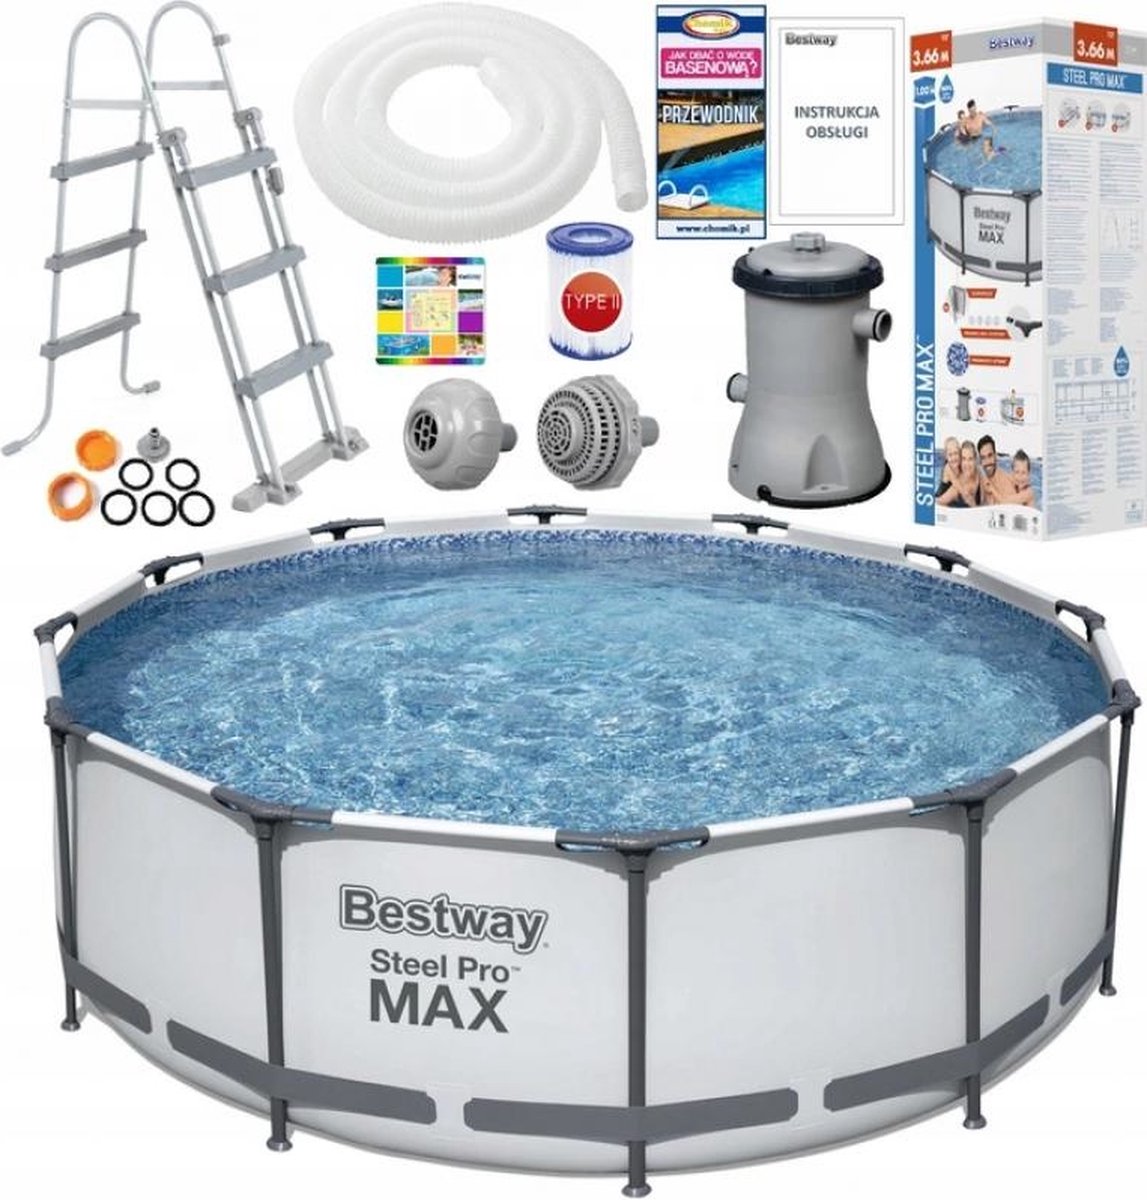 Bestway Steel Pro MAX - Opzetzwembad - 366x100 cm - compleet met accessoires